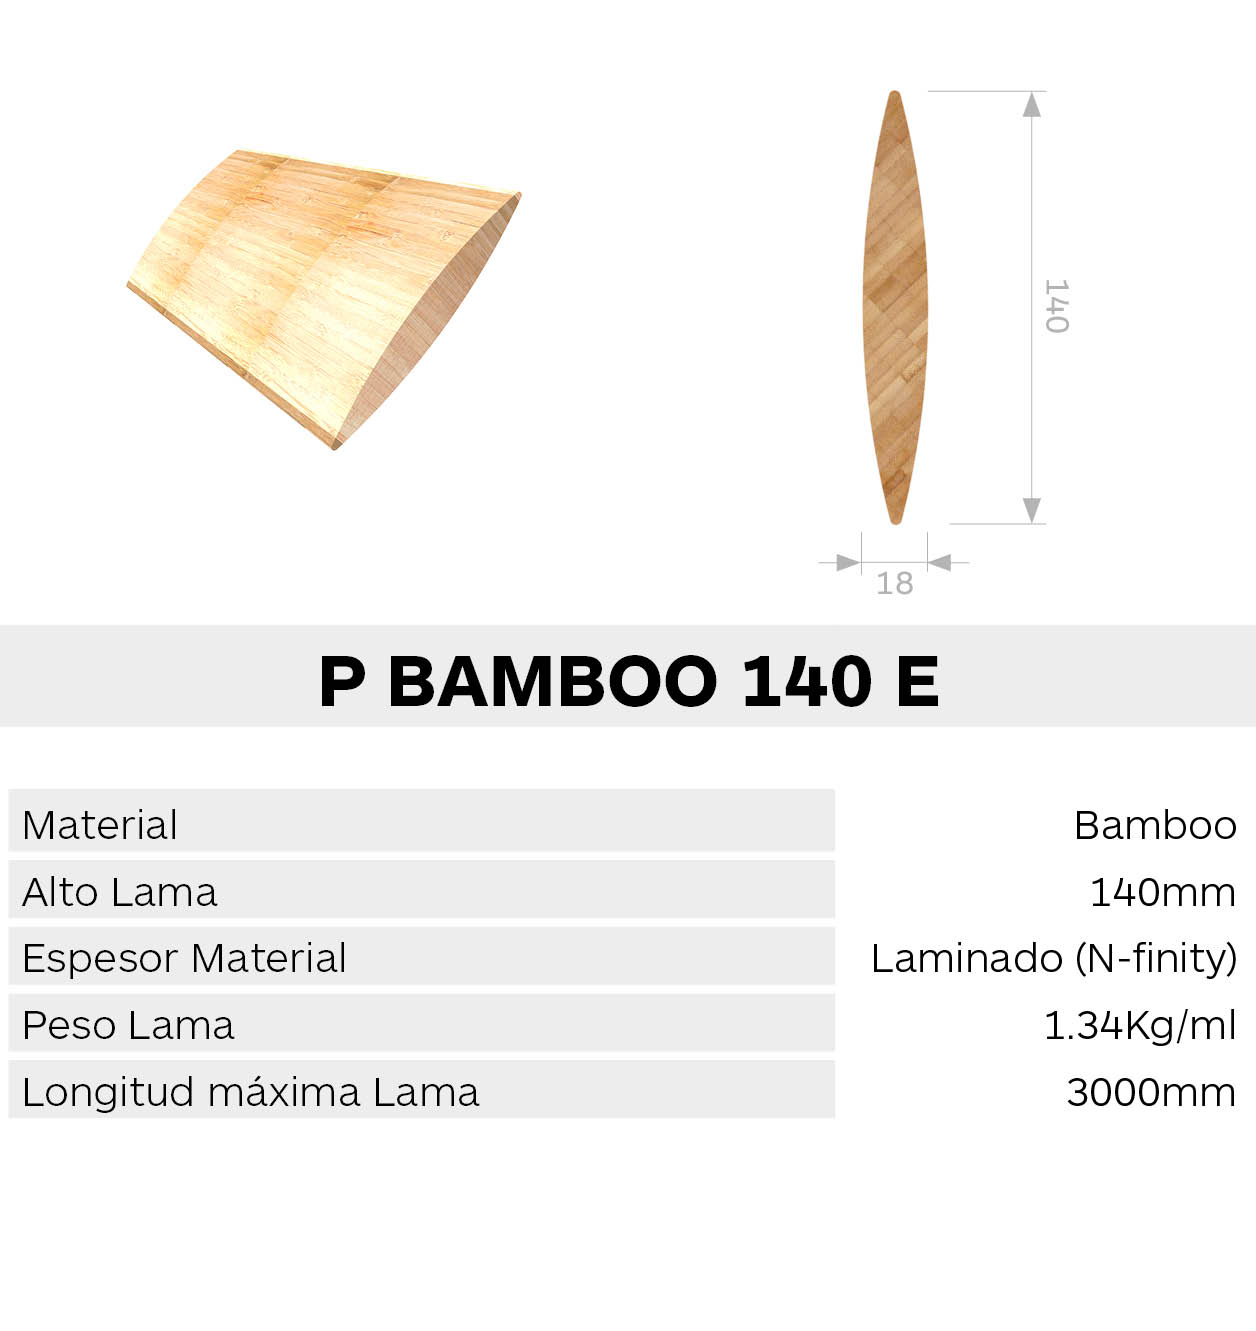 Caracteristica lama p bamboo 140 e